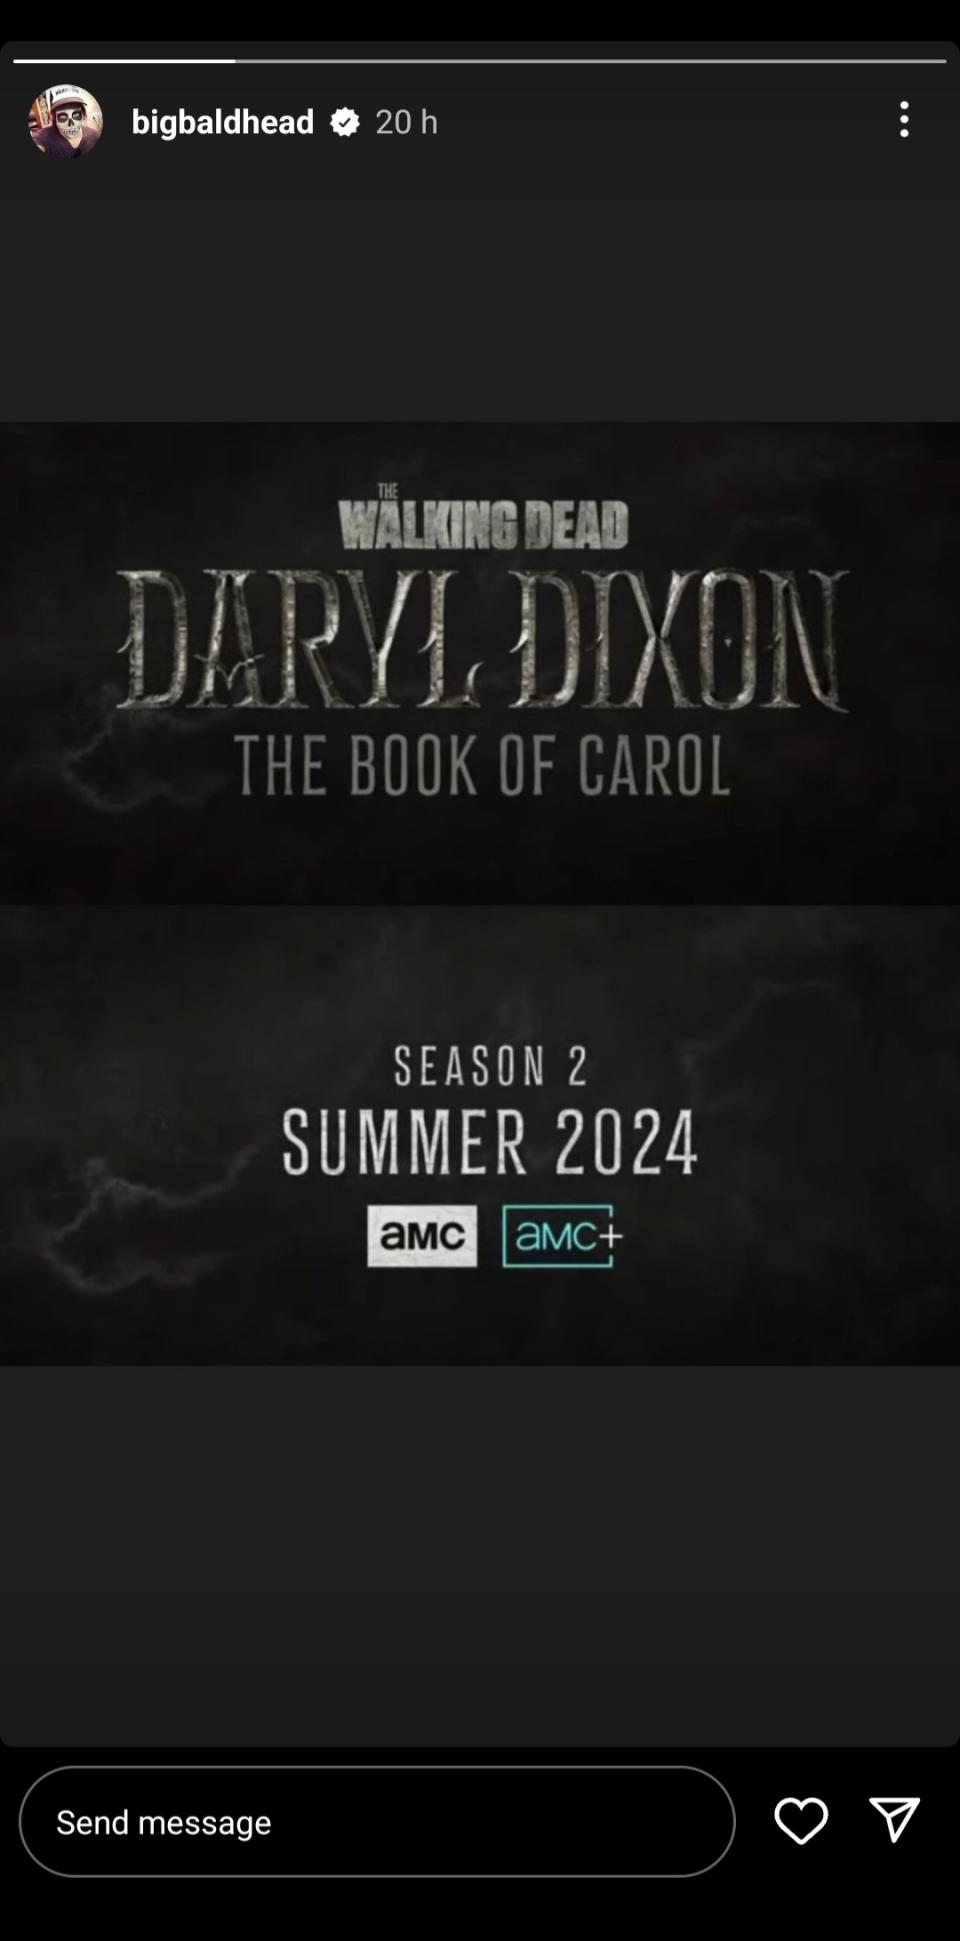 Norman Reedus seemingly confirmed The Walking Dead: Daryl Dixon season 2 release window on Instagram